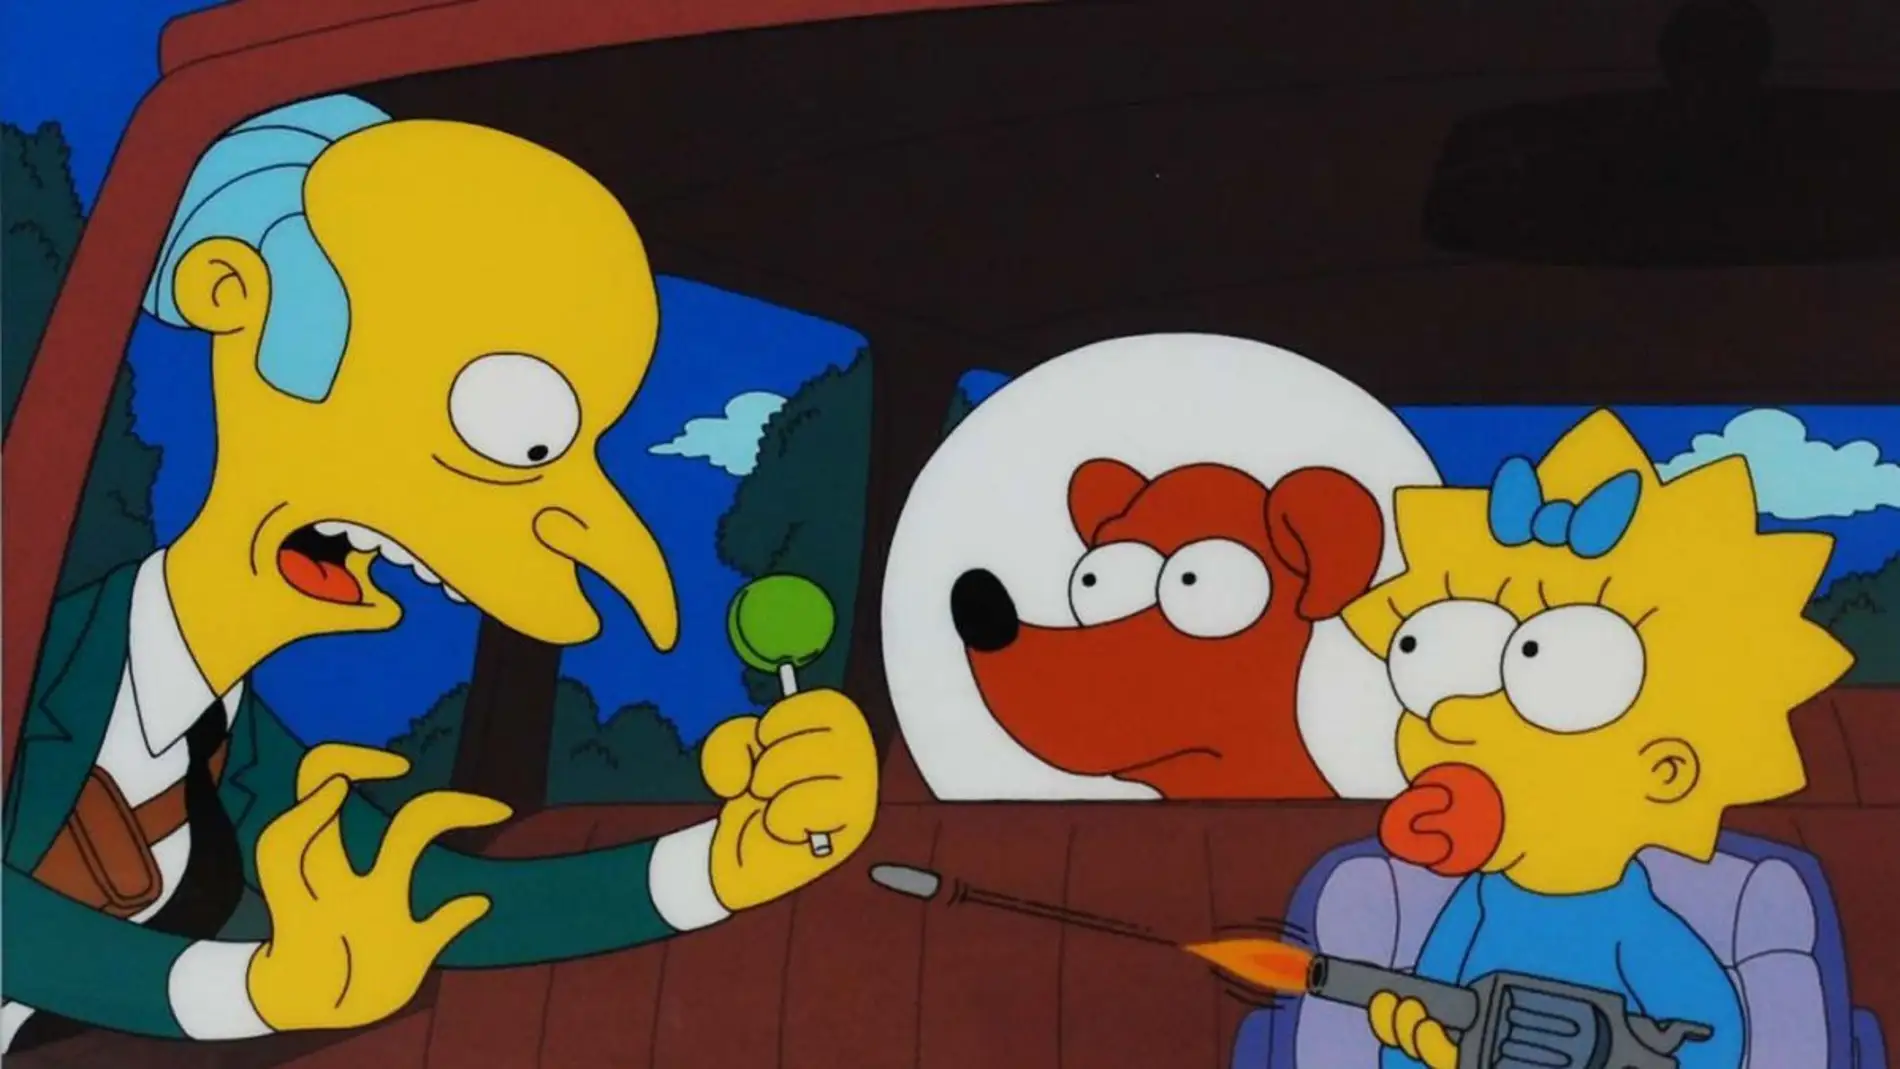 Imágen del episodio "¿Quién mato al señor Burns?" de 'Los Simpson'